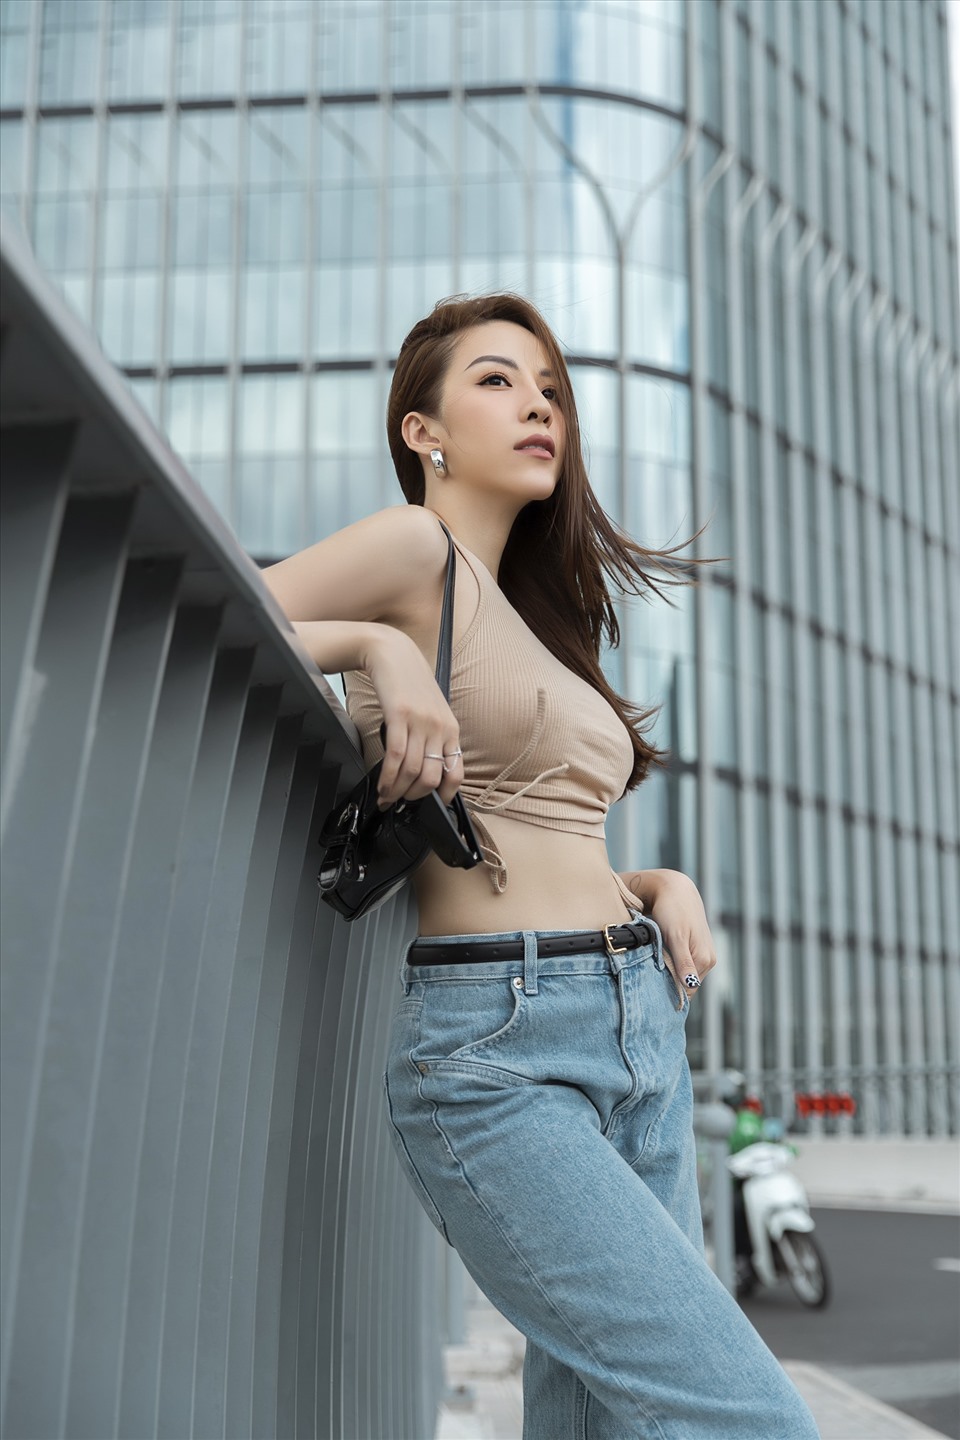 Trong bộ ảnh mới, nữ diễn viên gốc Cà Mau diện đồ trẻ trung với áo crop top, phối quần jeans, giày thể thao, kết hợp cùng túi xách đeo vai hợp mốt. Ảnh: Phan Tiến Vũ.